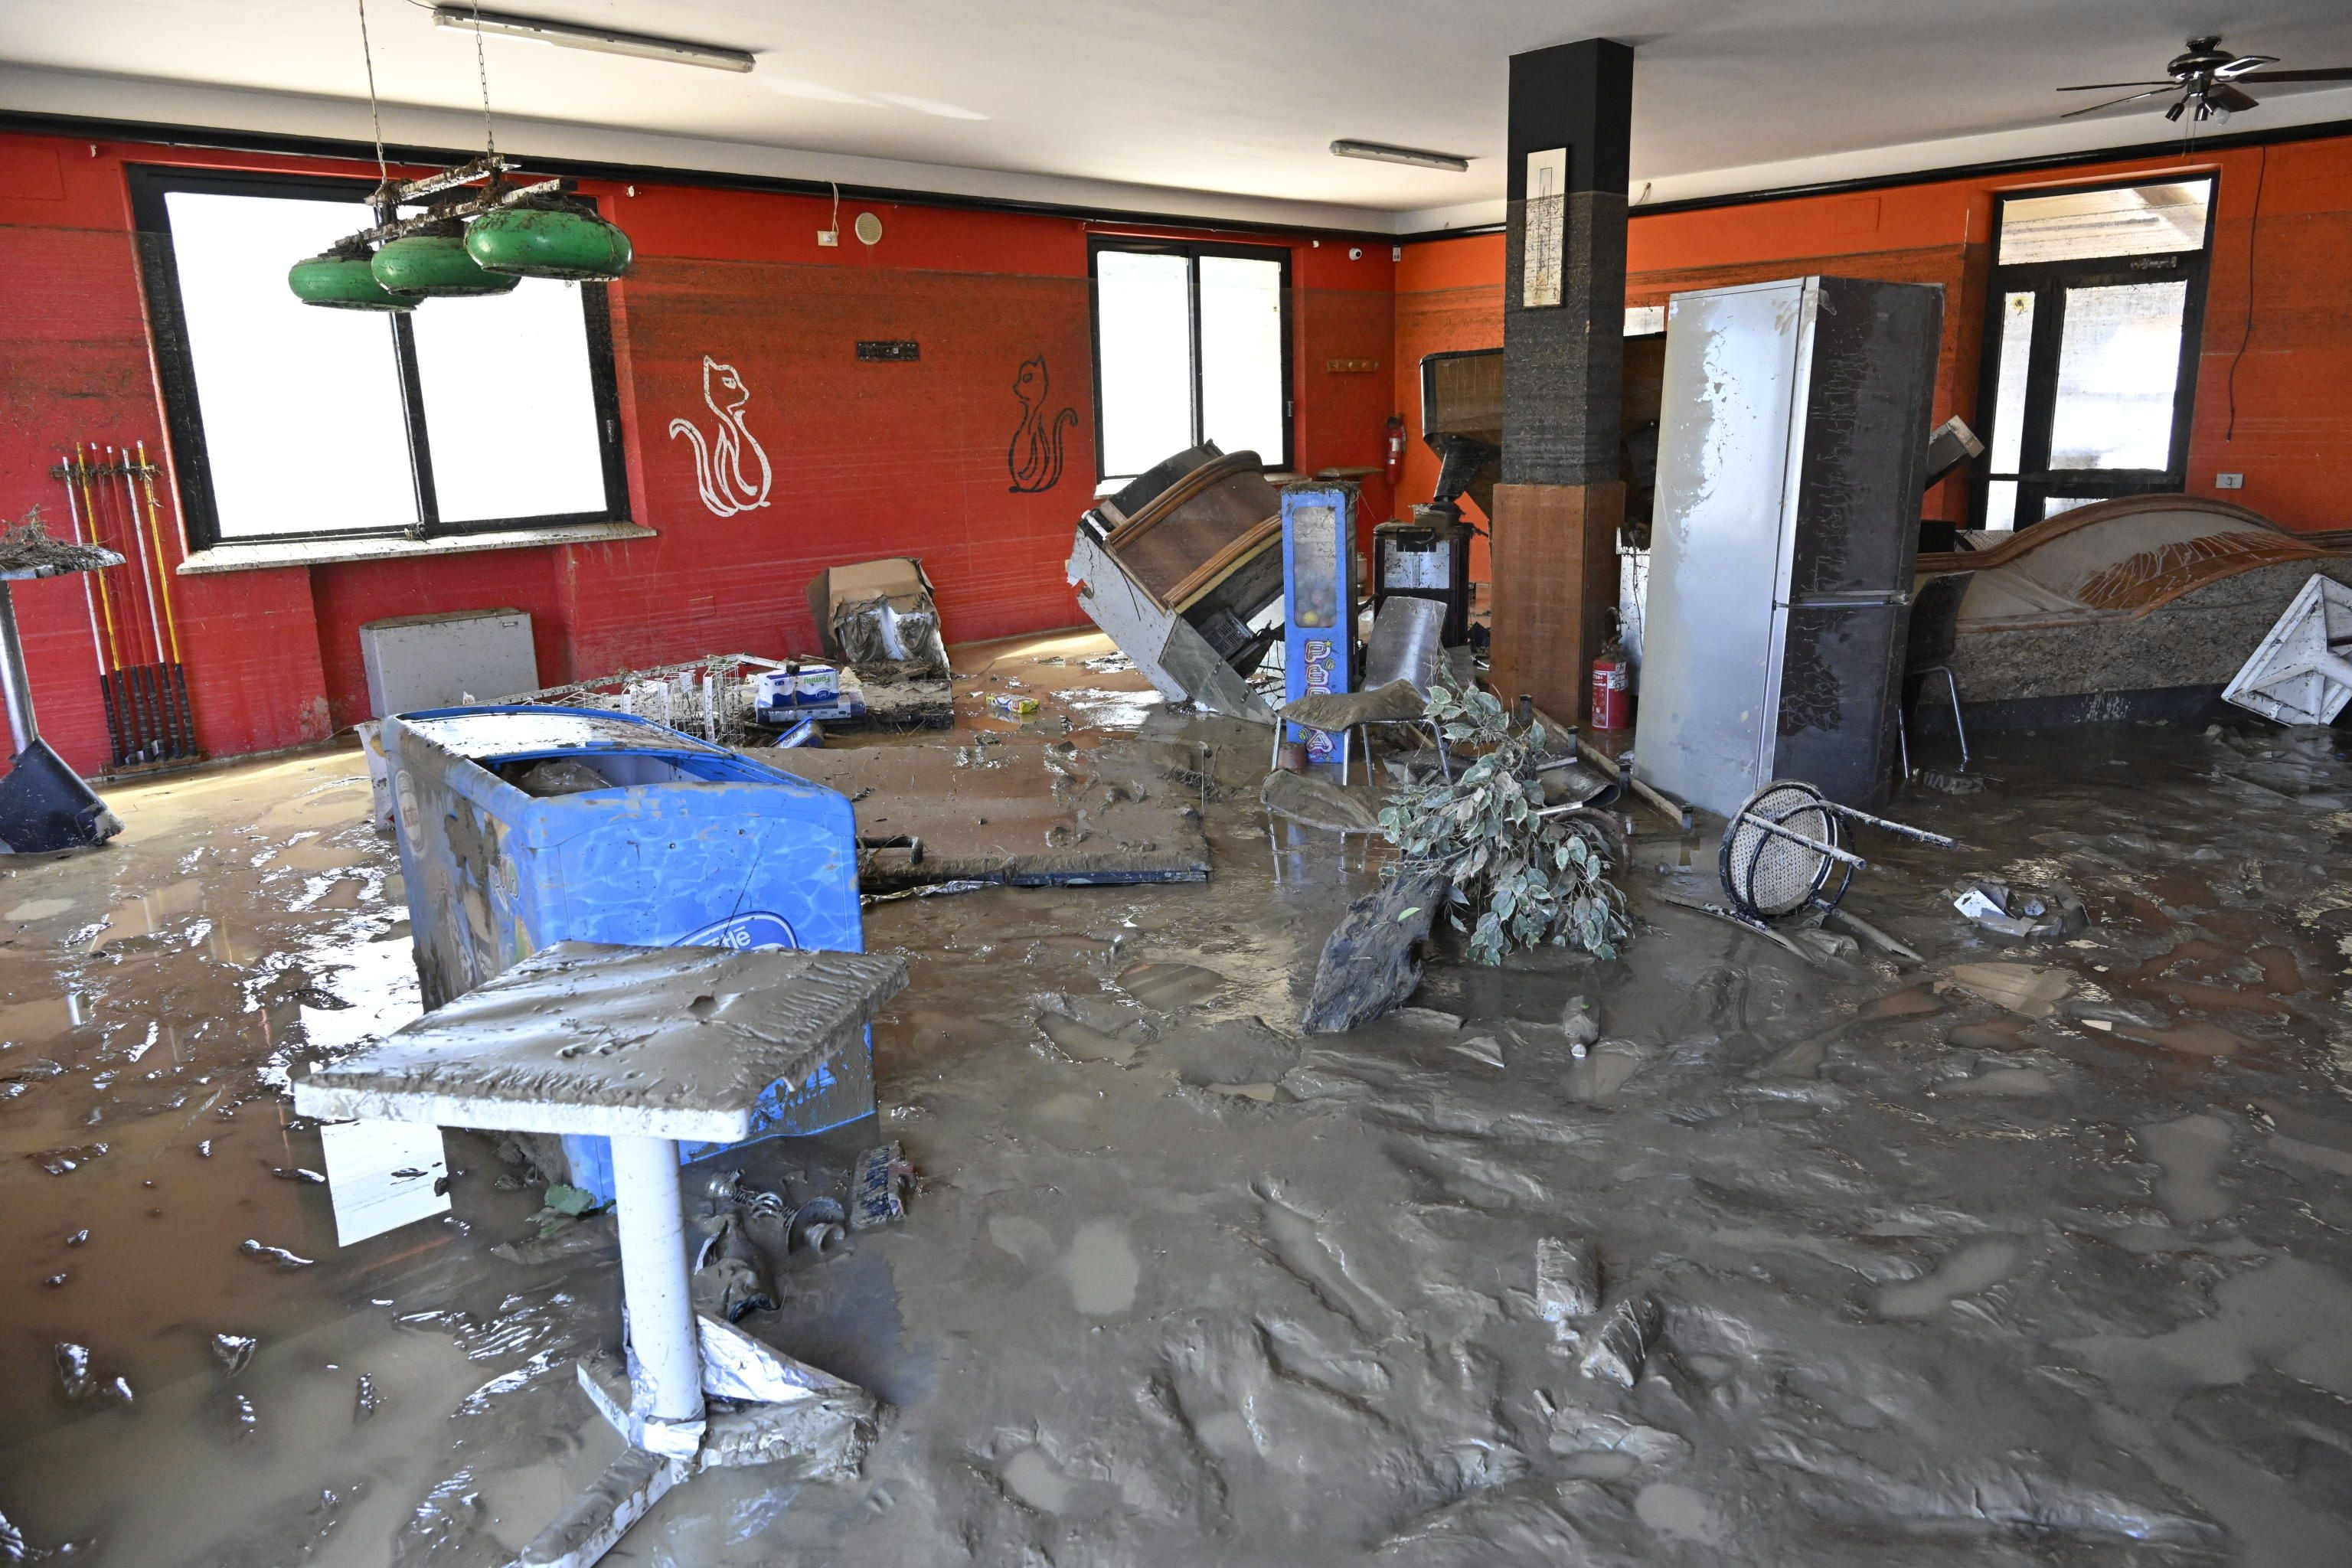 El interior de un edificio inundado y dañado tras las inundaciones repentinas causadas por una bomba de lluvia nocturna, en Pianello di Ostra, provincia de Ancona, centro de Italia. 